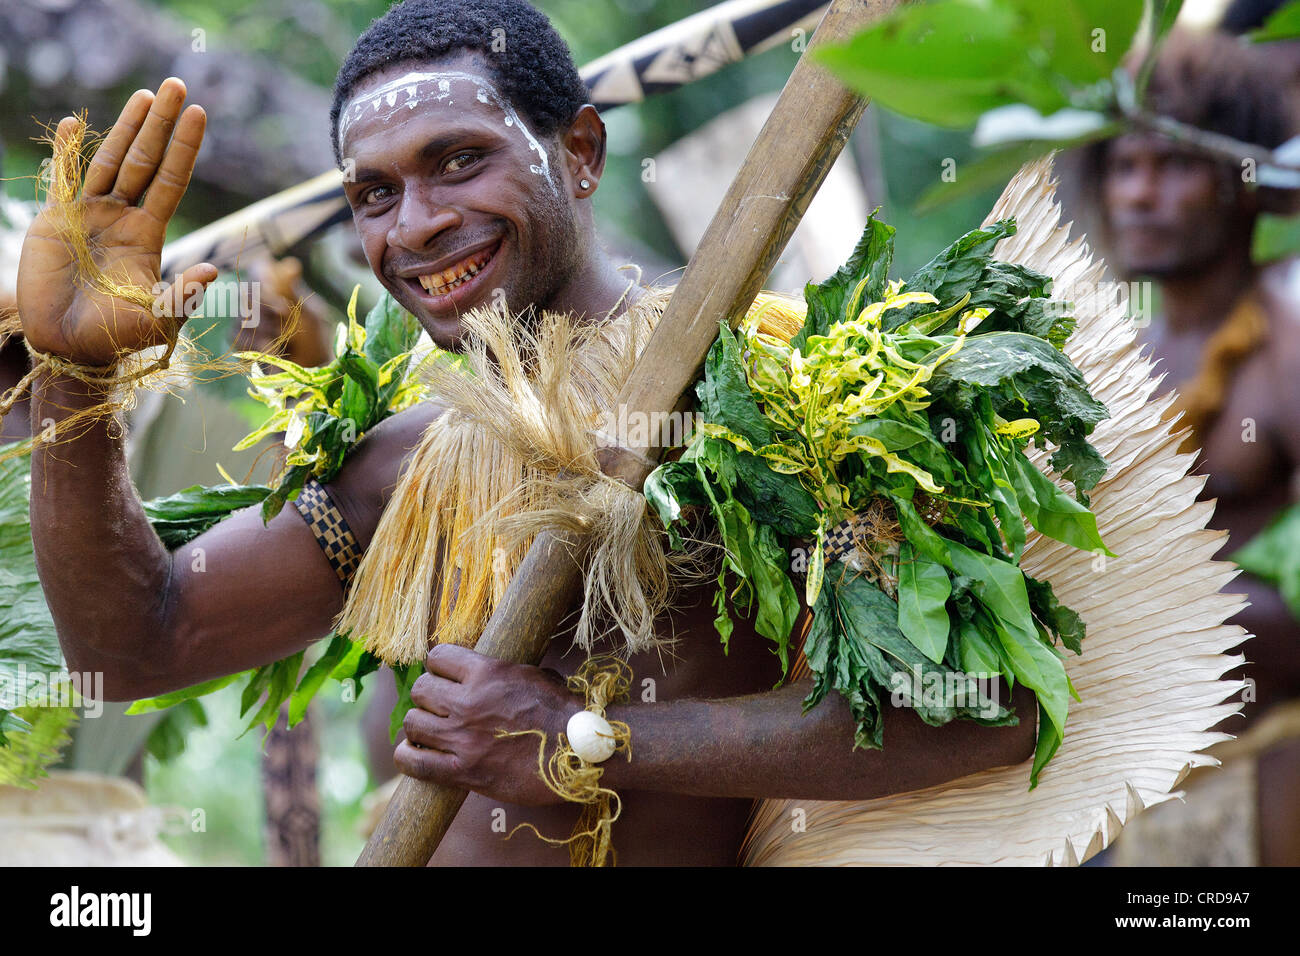 Peuple primitif, l'île de Santa Cruz, les Îles Salomon, Mélanésie, Océanie  Photo Stock - Alamy